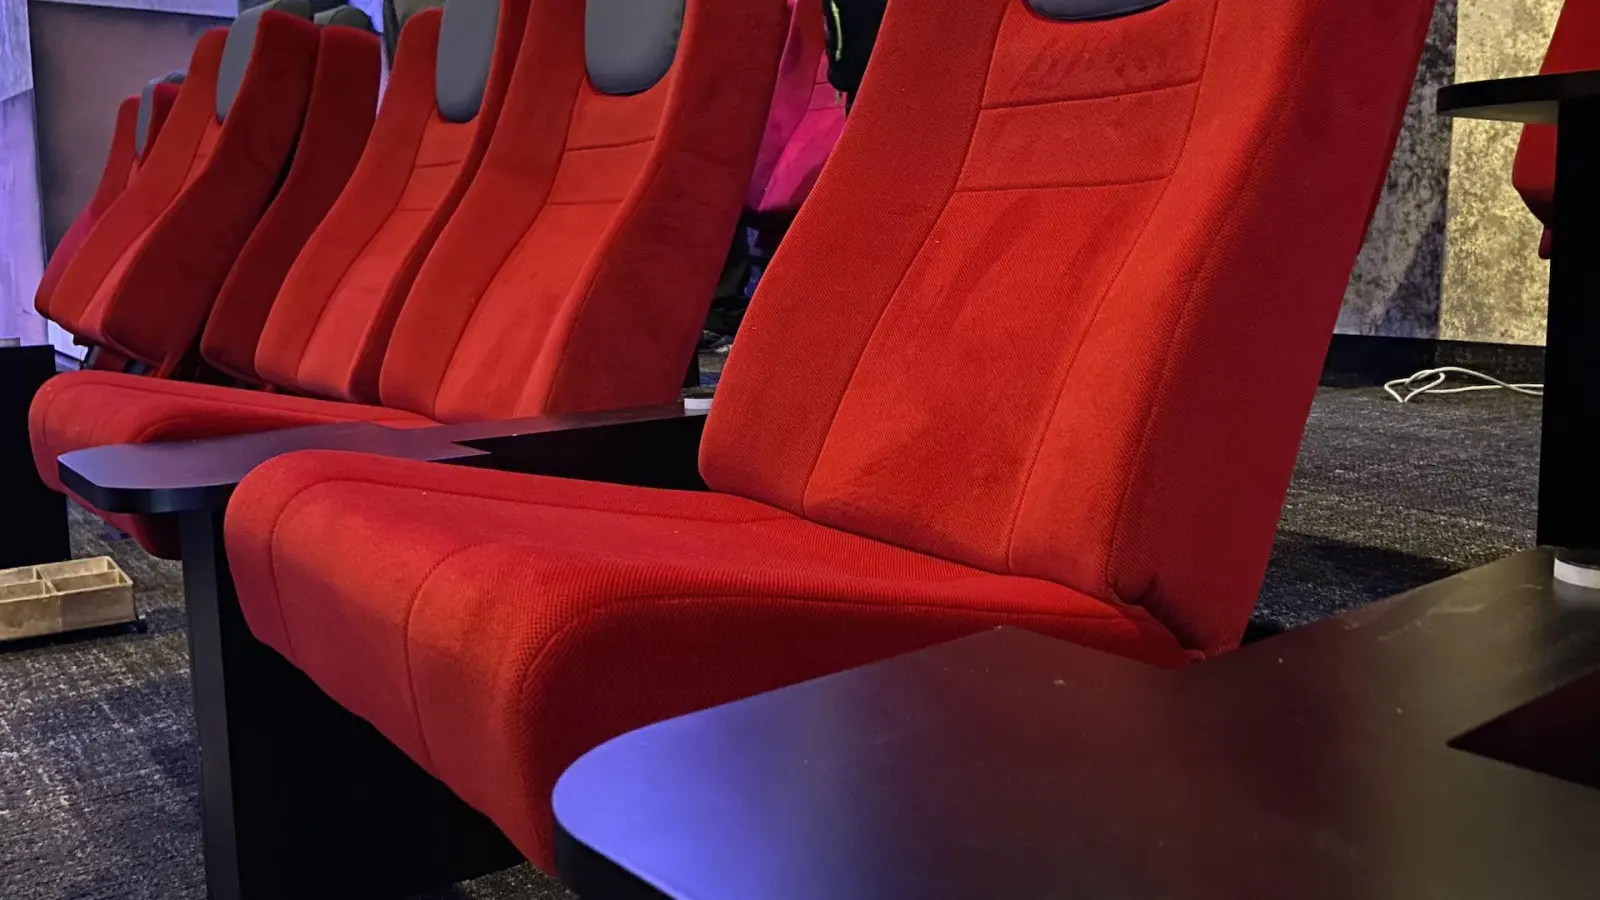 Rote Stühle erwartet die Besucher künftig im Kino 1 der CT Lichtspiele Taucha. Im Kino 2 werden grüne Stühle verbaut. (Foto: taucha-kompakt.de)